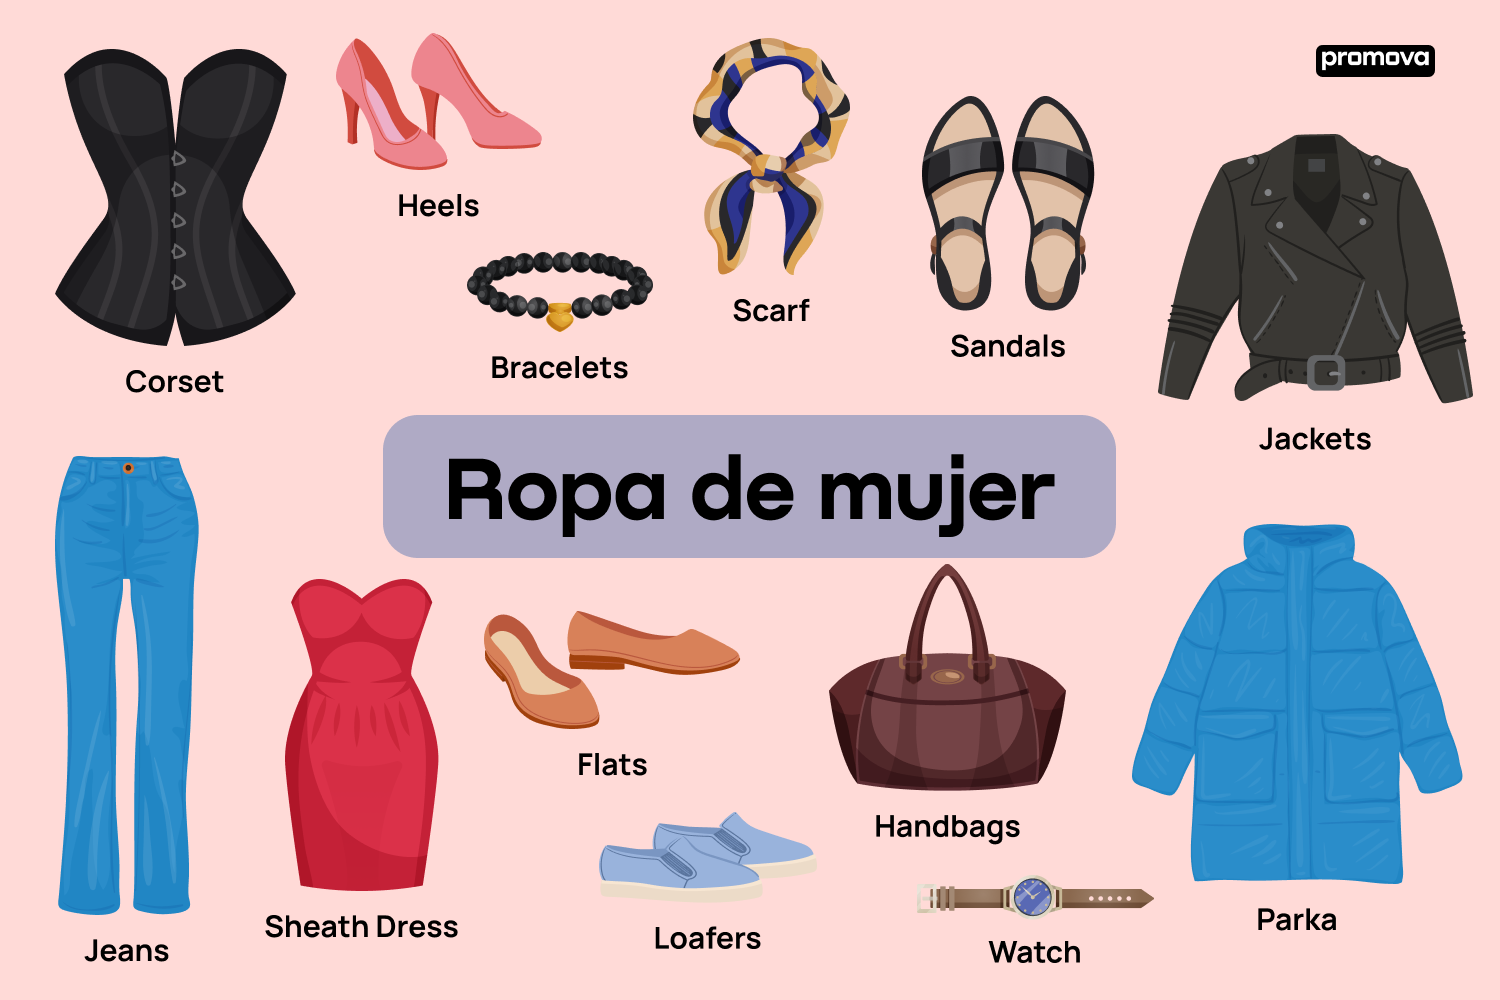 Explorando el guardarropa: Vocabulario de ropa de mujer en inglés